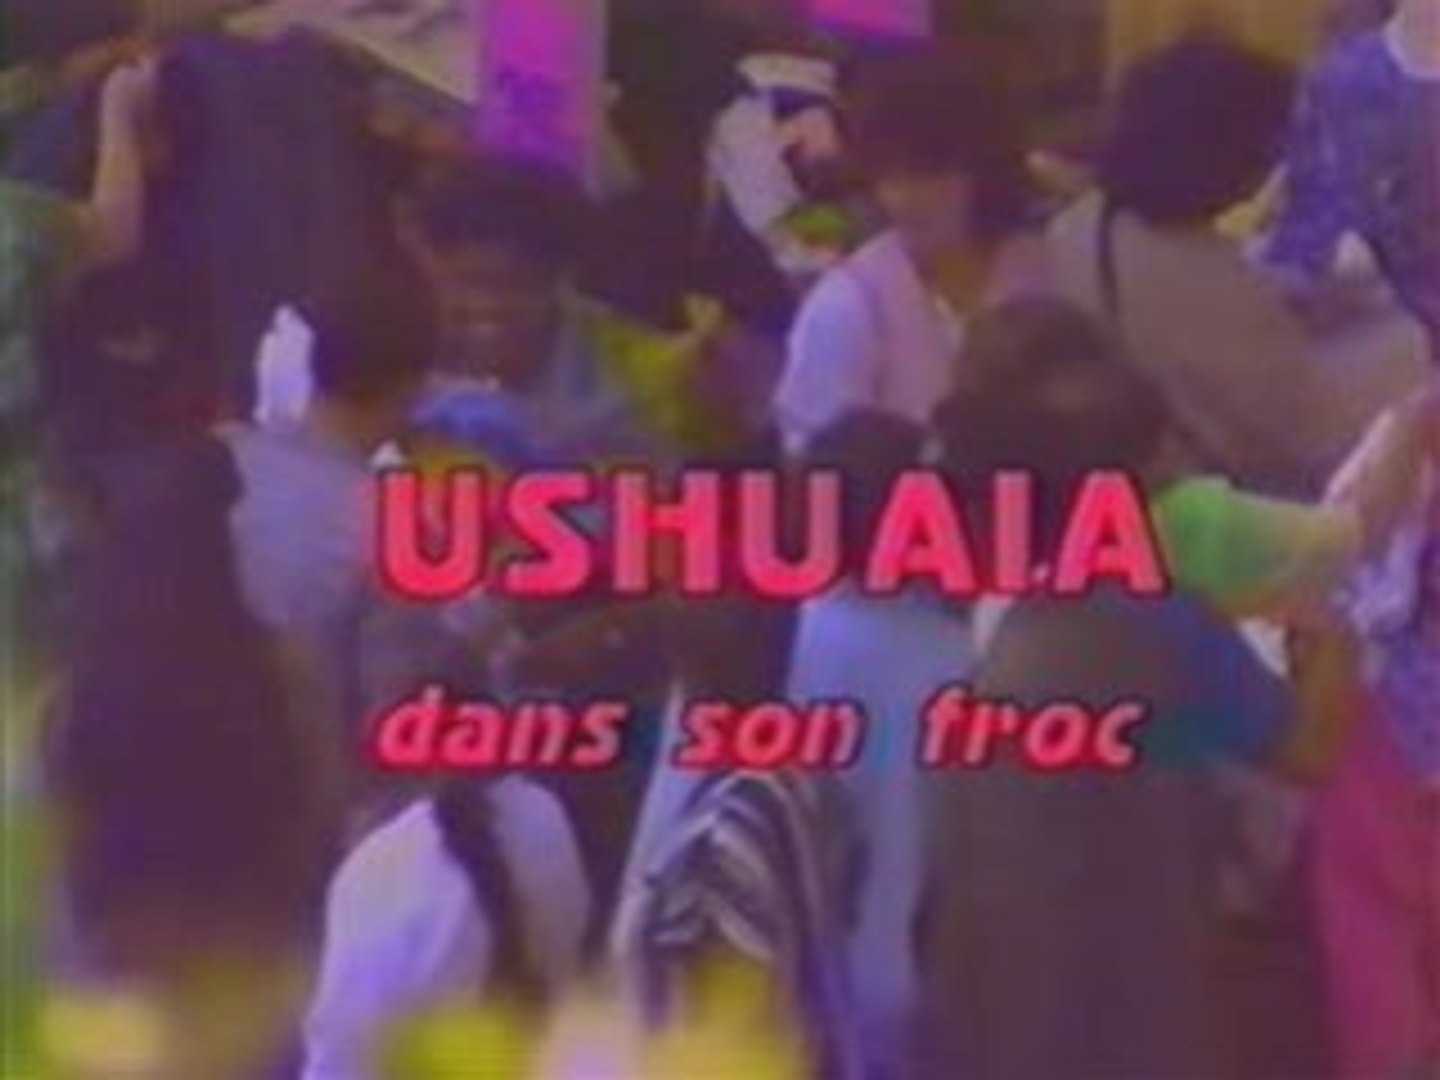 Les Inconnus - Ushuaia Dans Son Froc - Vidéo Dailymotion